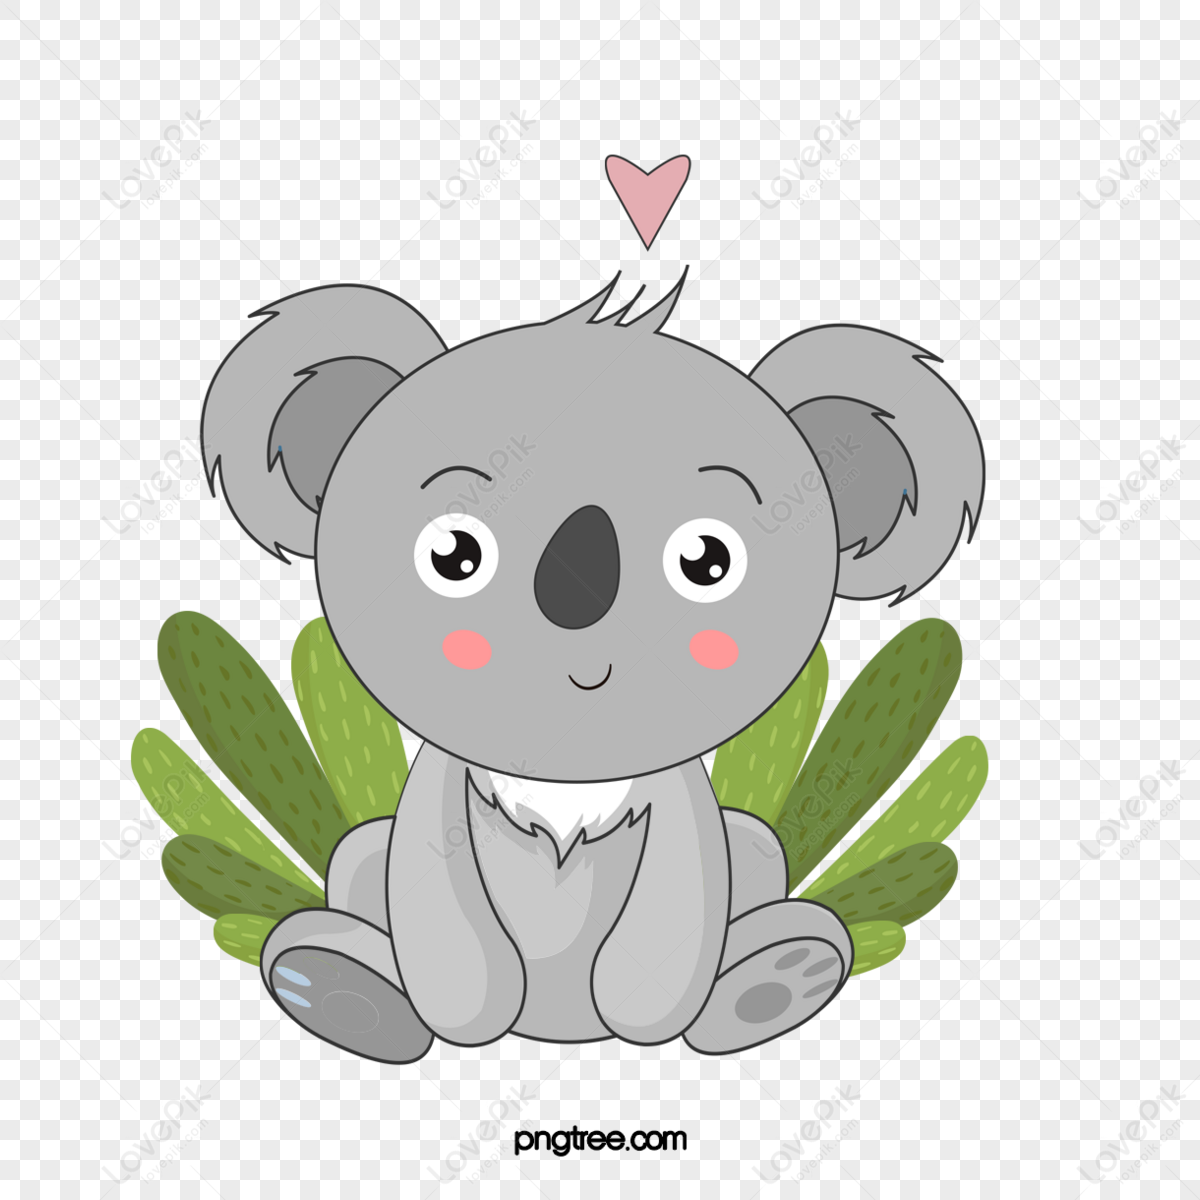 6800+ Testa Di Koala Scarica Gratis di Immagini PNG con Sfondo Trasparente  - Lovepik